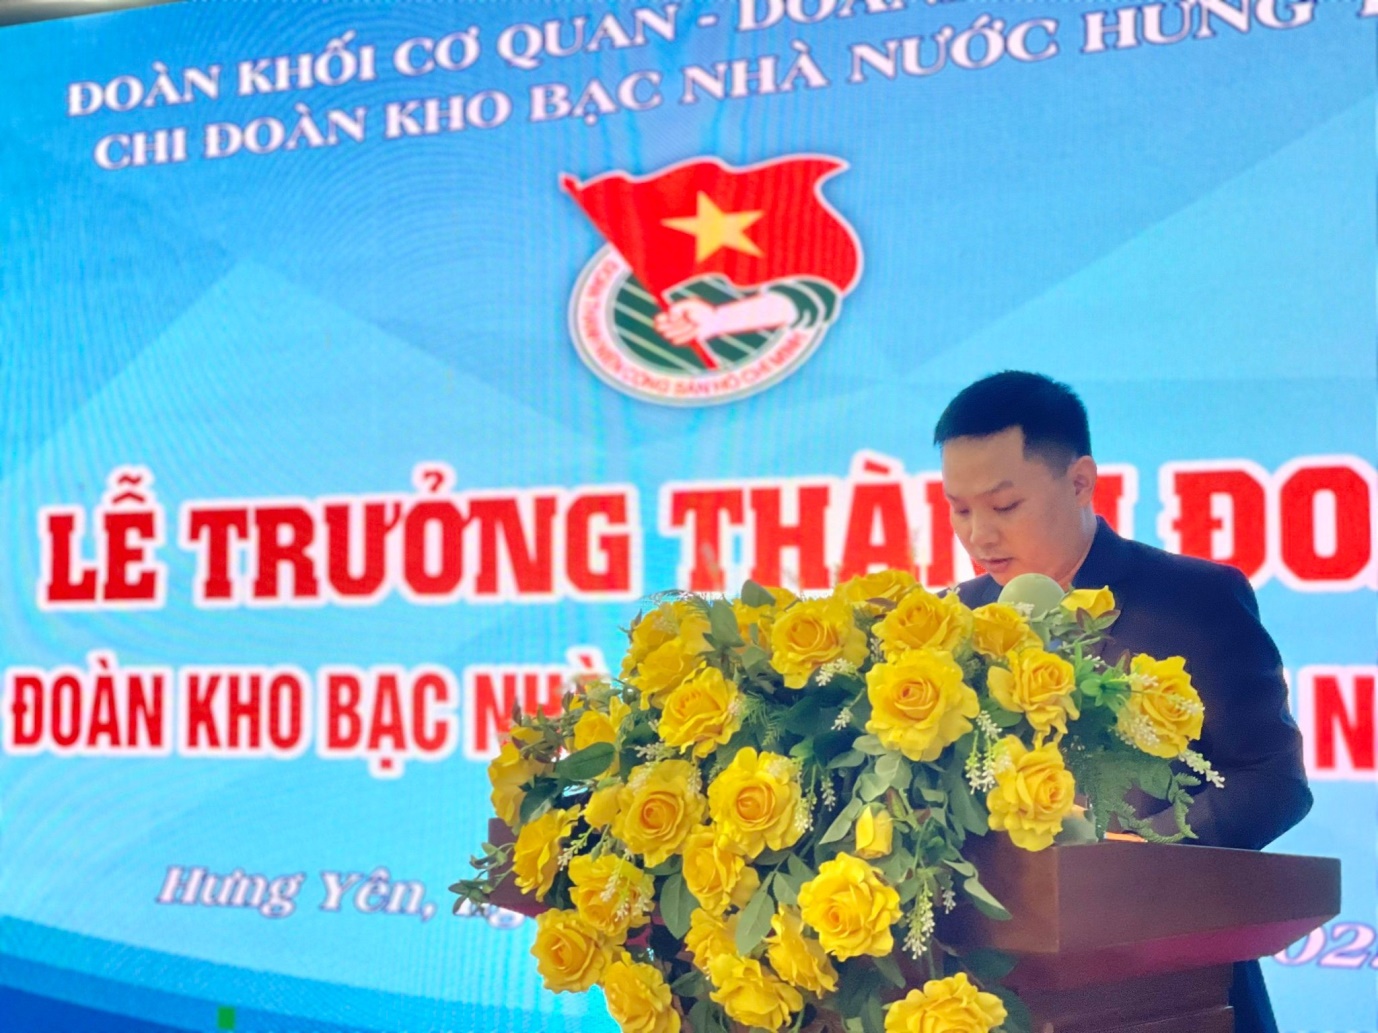 Đồng chí Cao Xuân Quỳnh – Bí thư Chi đoàn Kho bạc Nhà nước Hưng Yên phát biểu tại buổi lễ